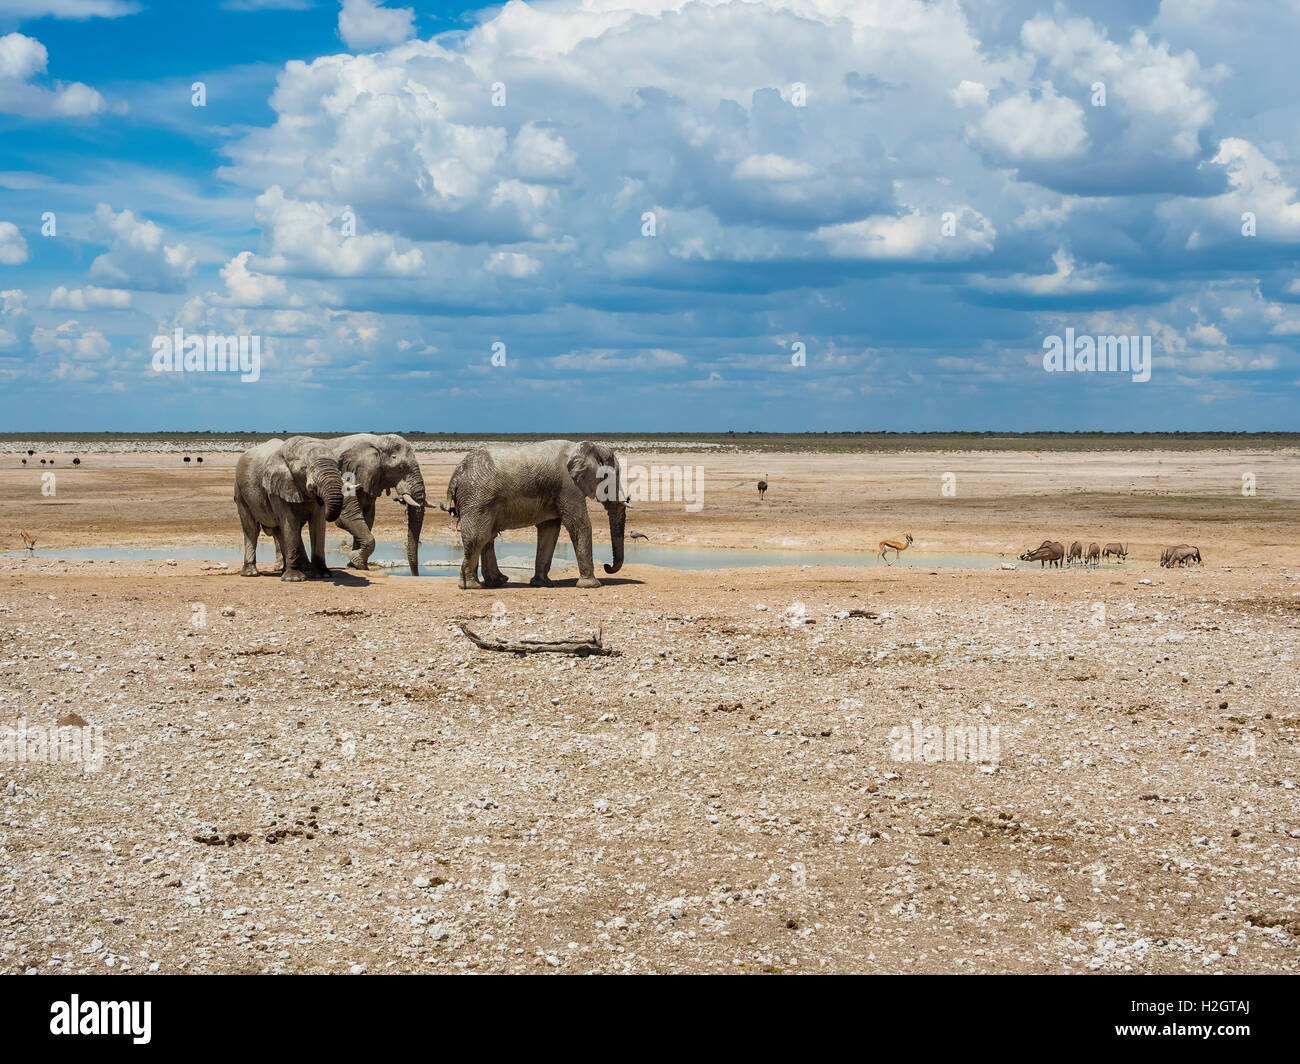 African bush elephants (Loxodonta africana) at waterhole, dry landscape, Etosha National Park, Namibia Stock Photo